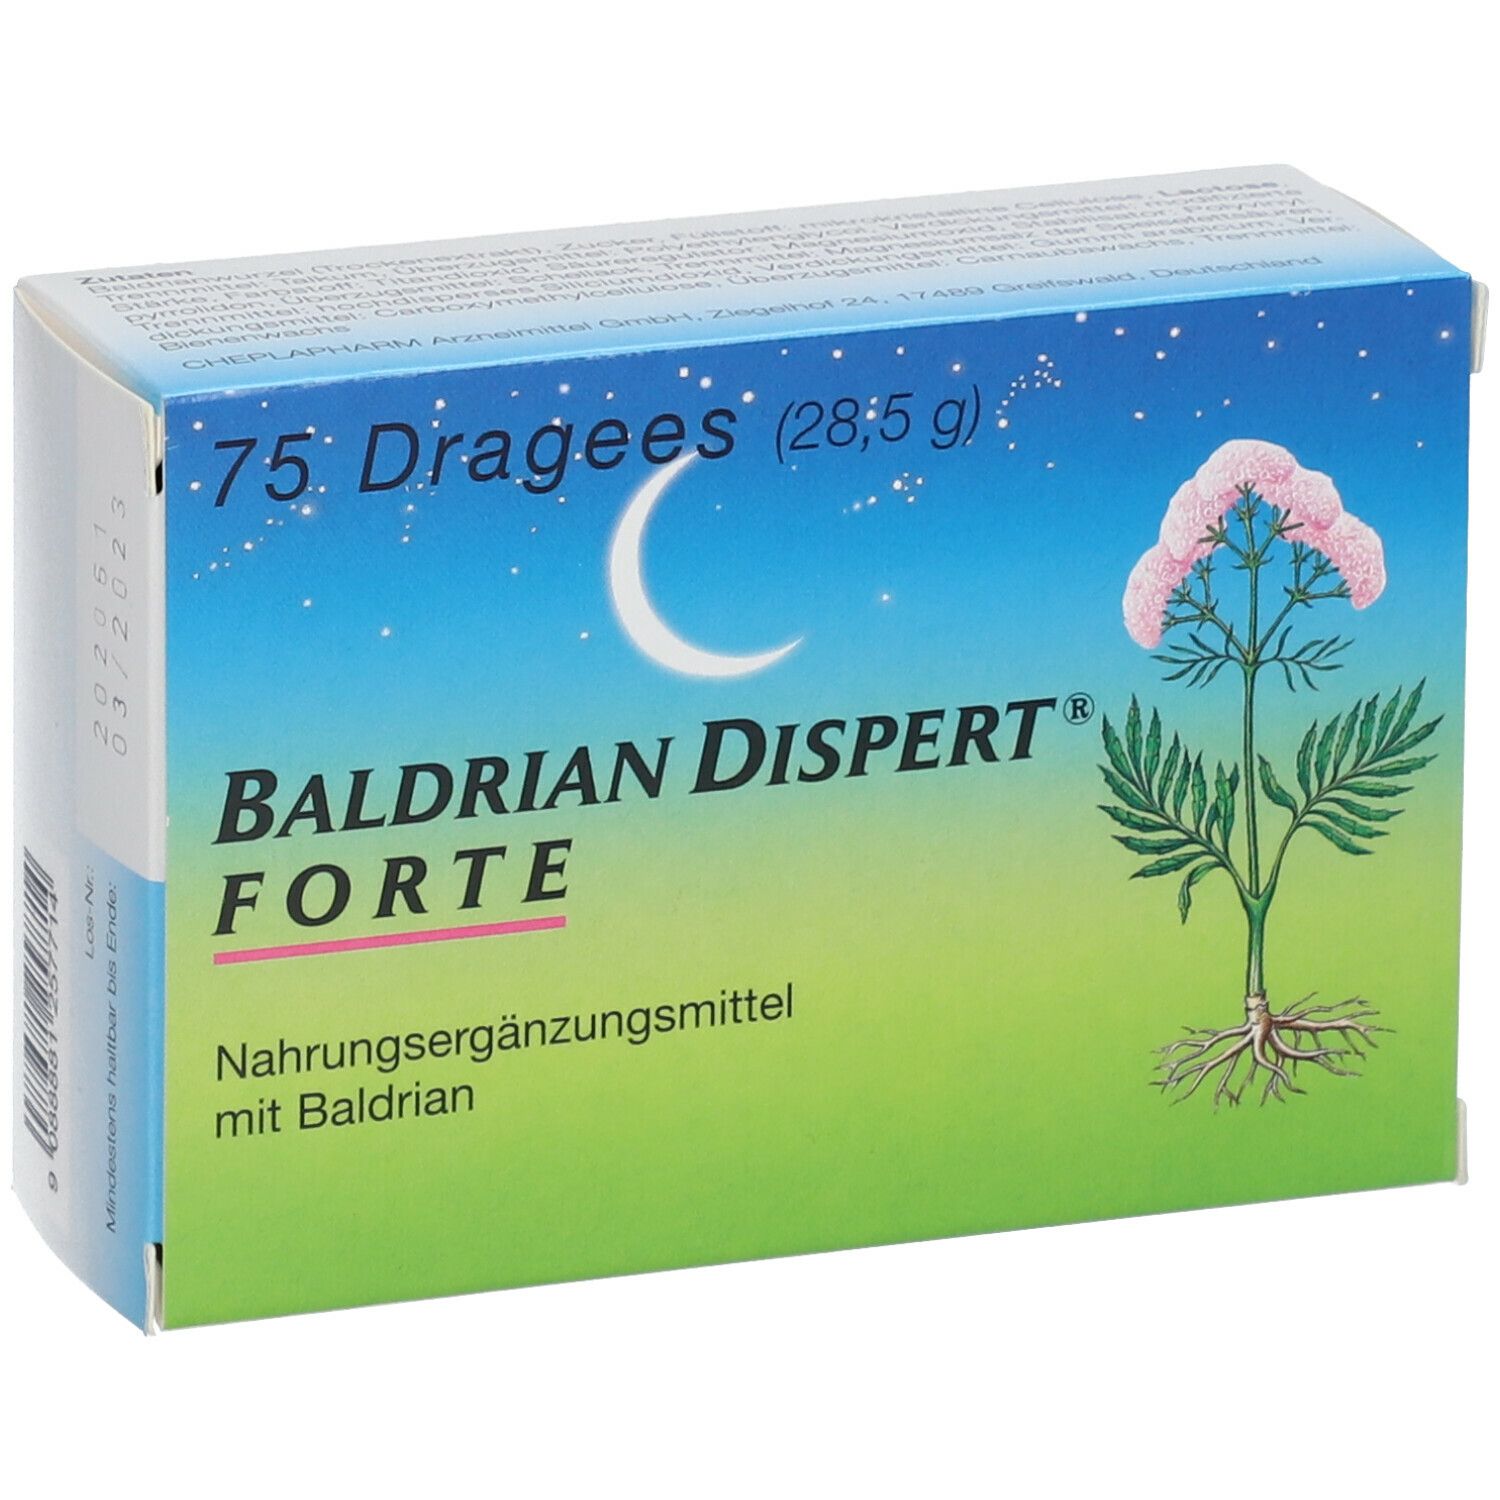 BALDRIAN DISPERT® FORTE